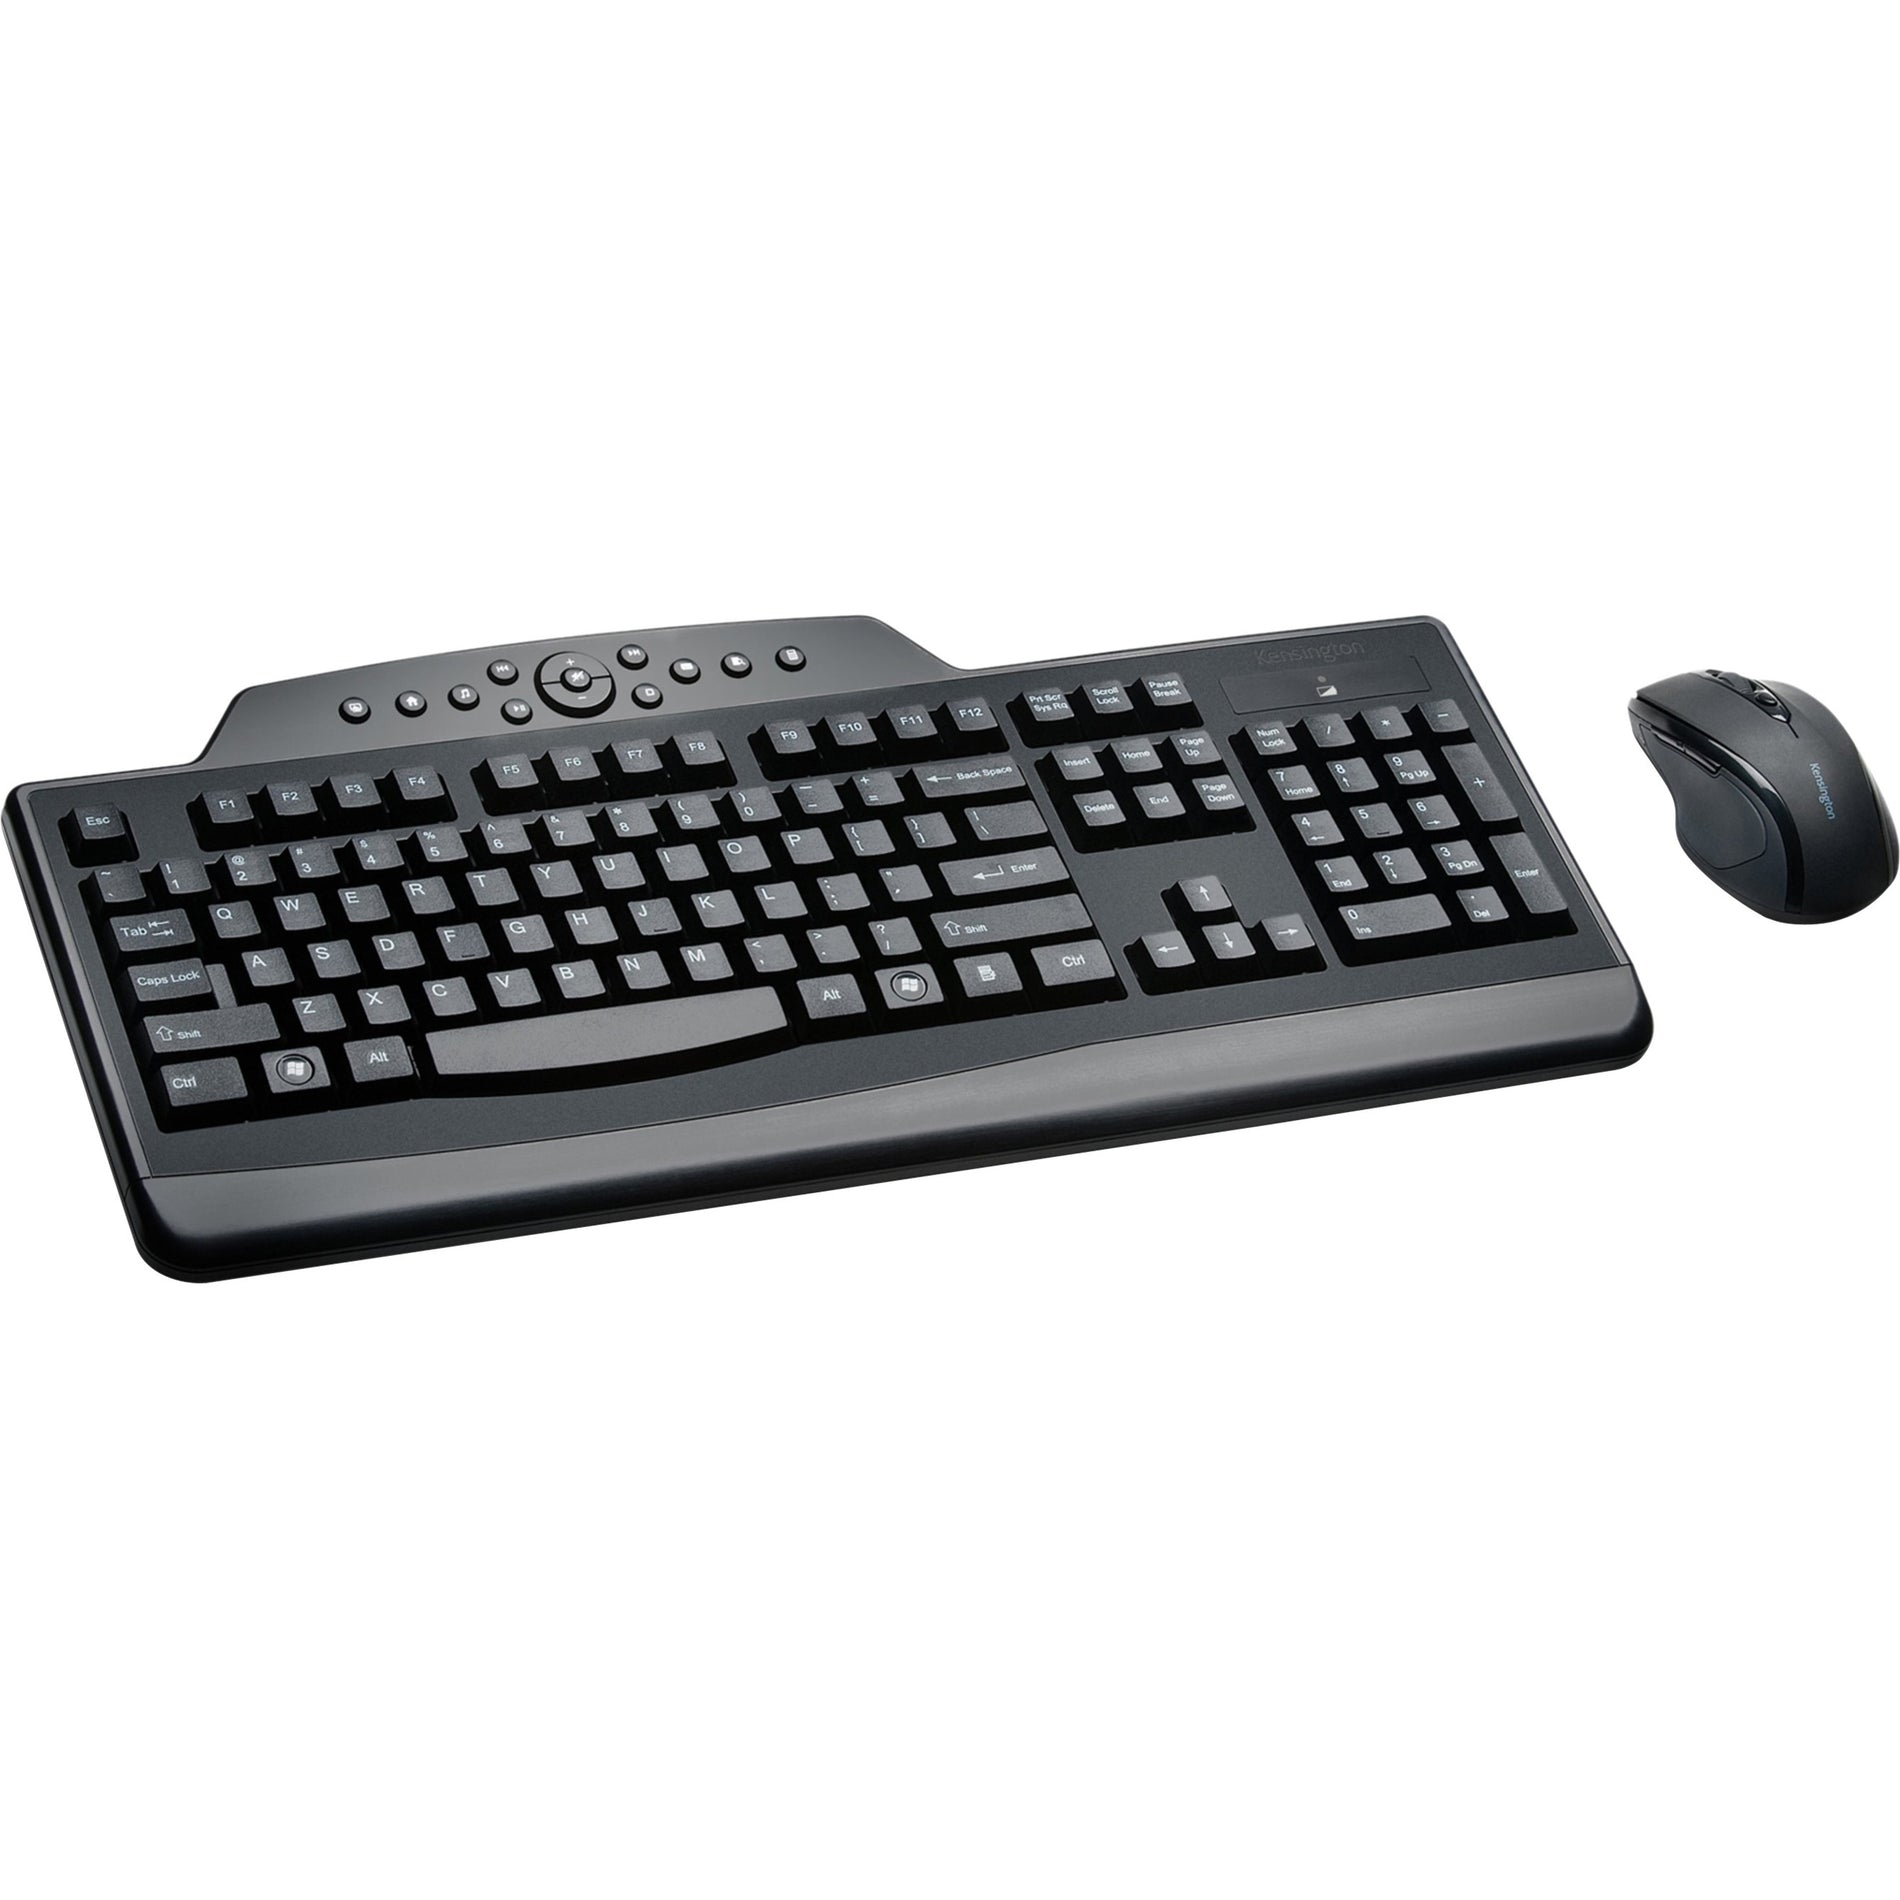 Kensington K72408USA ProFit Wireless Media Desktop Set, Full-size Keyboard, Spill Proof, Adjustable Feet, 3 Year Warranty